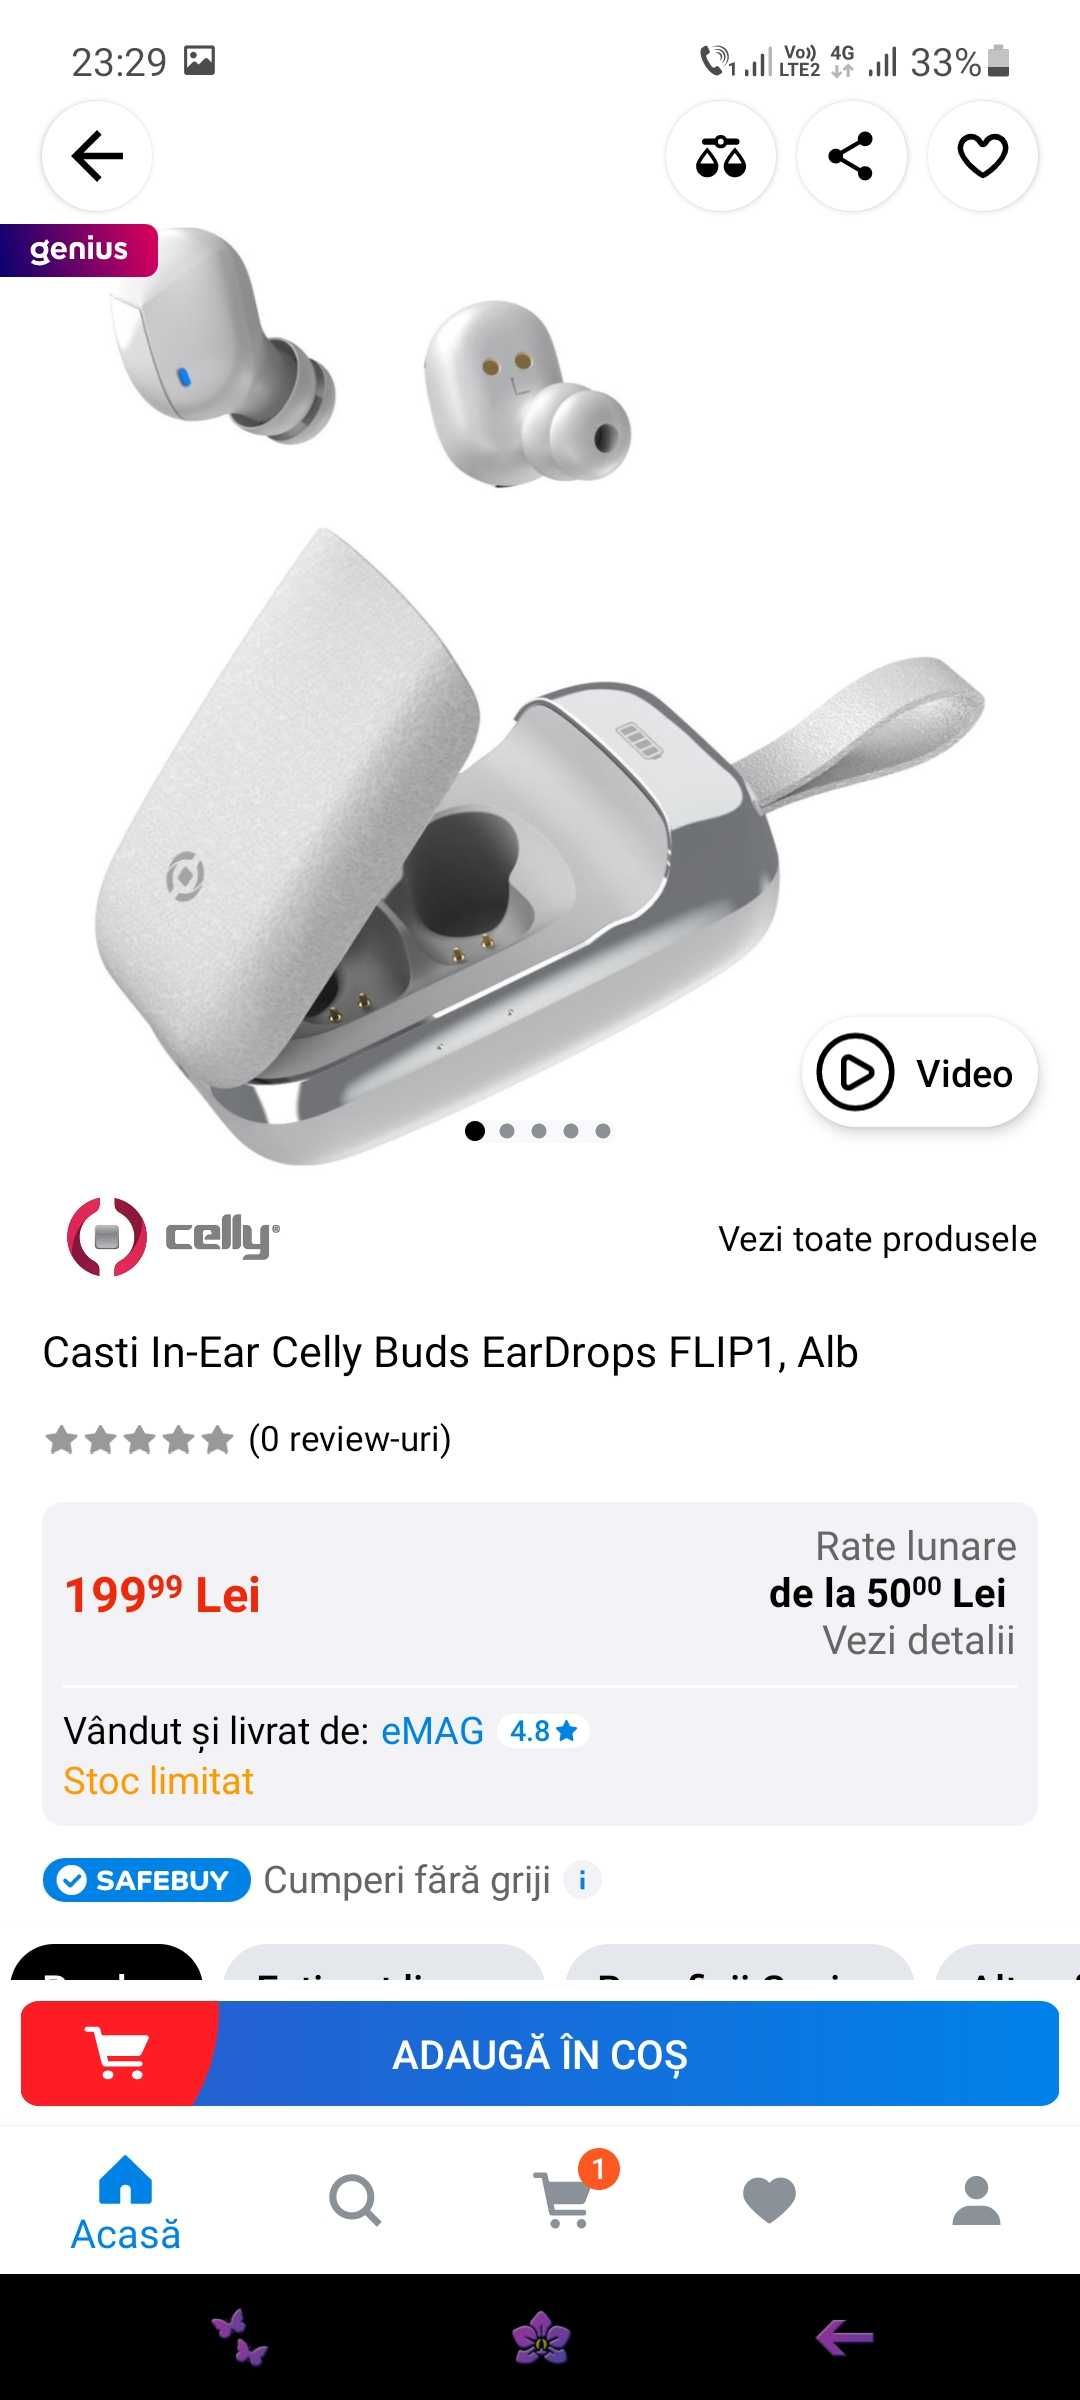 Casti Celly Buds In Ear Flip1, noi